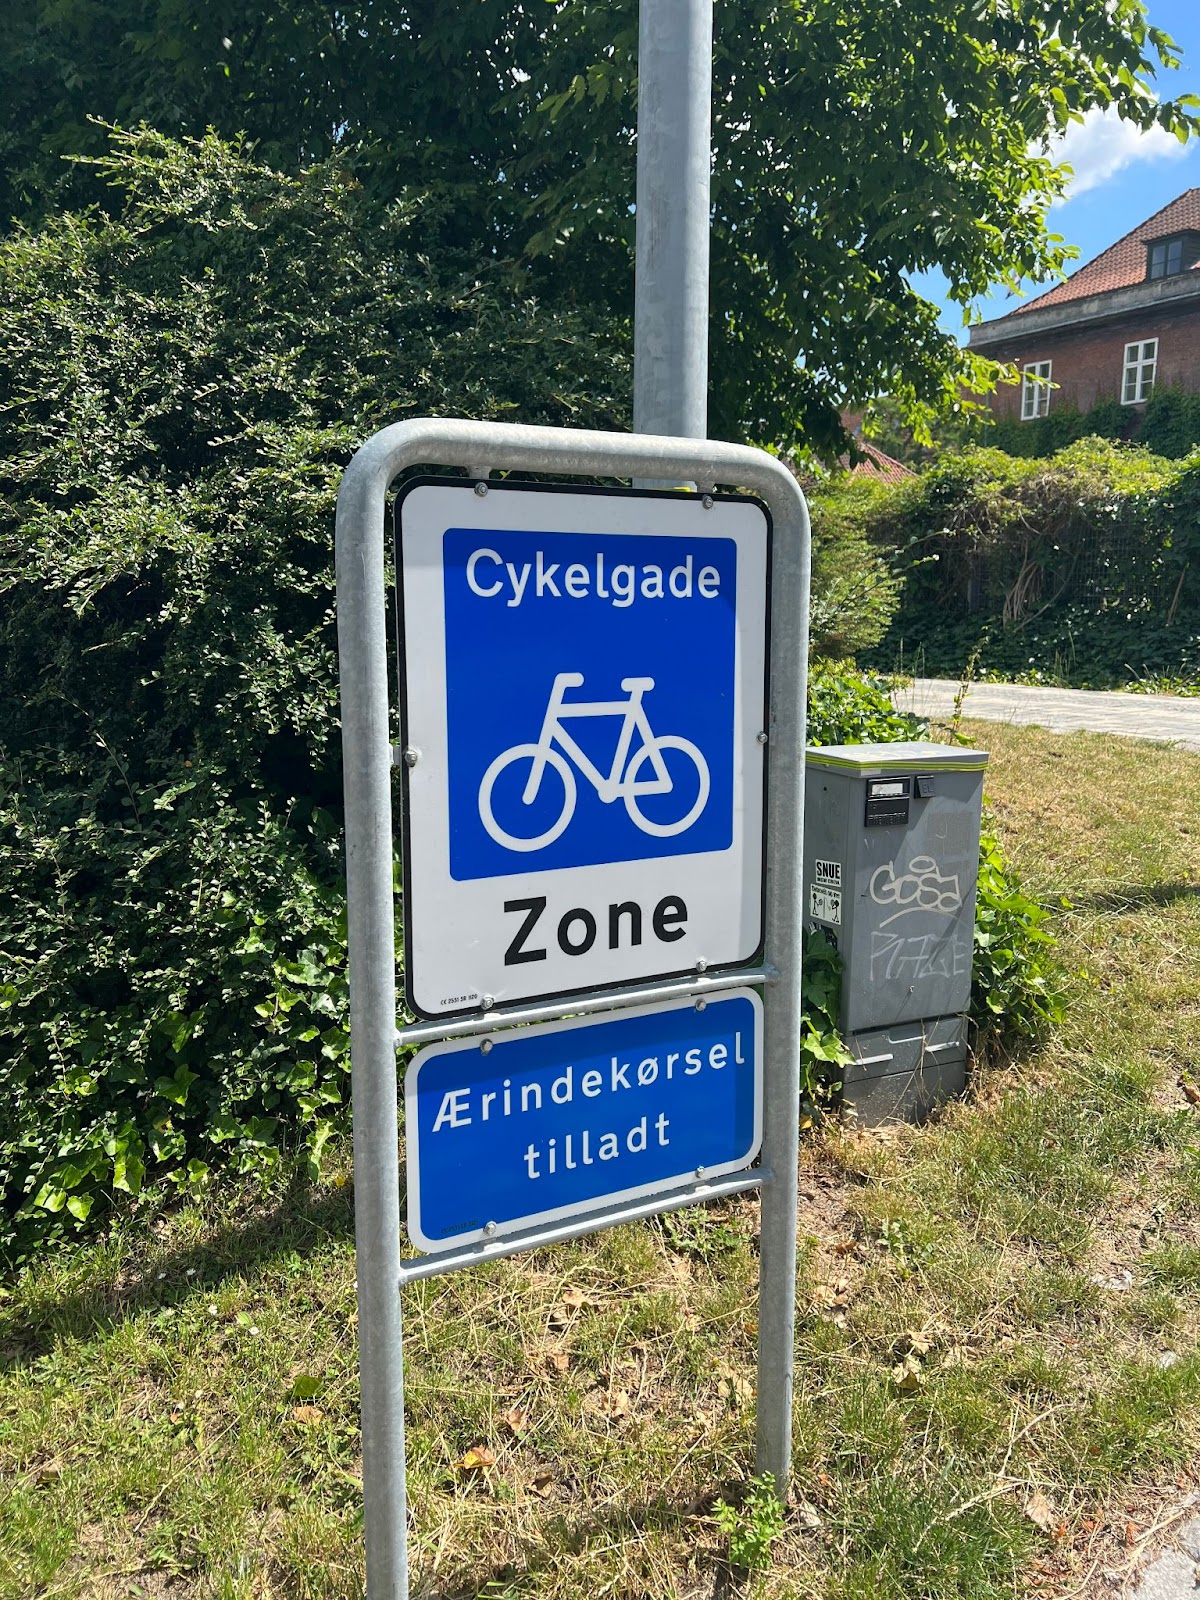 Schild des Radschnellweges "Cykelgade"